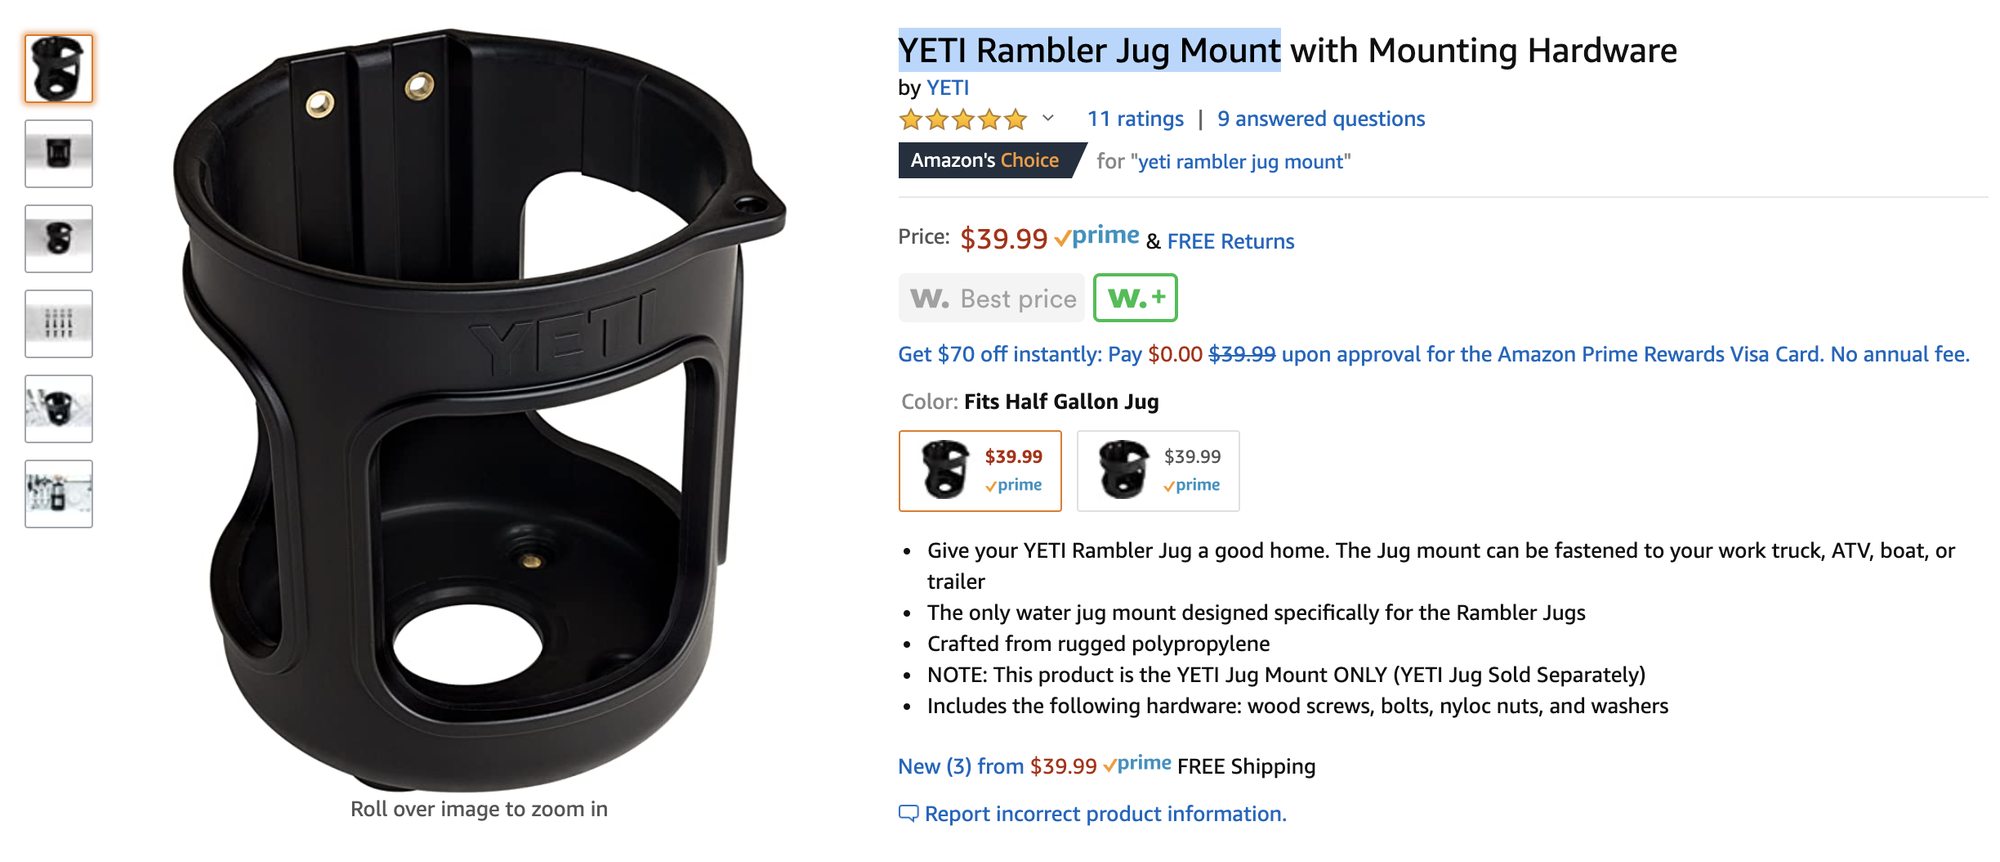 YETI Rambler Jug Mount with Mounting Hardware